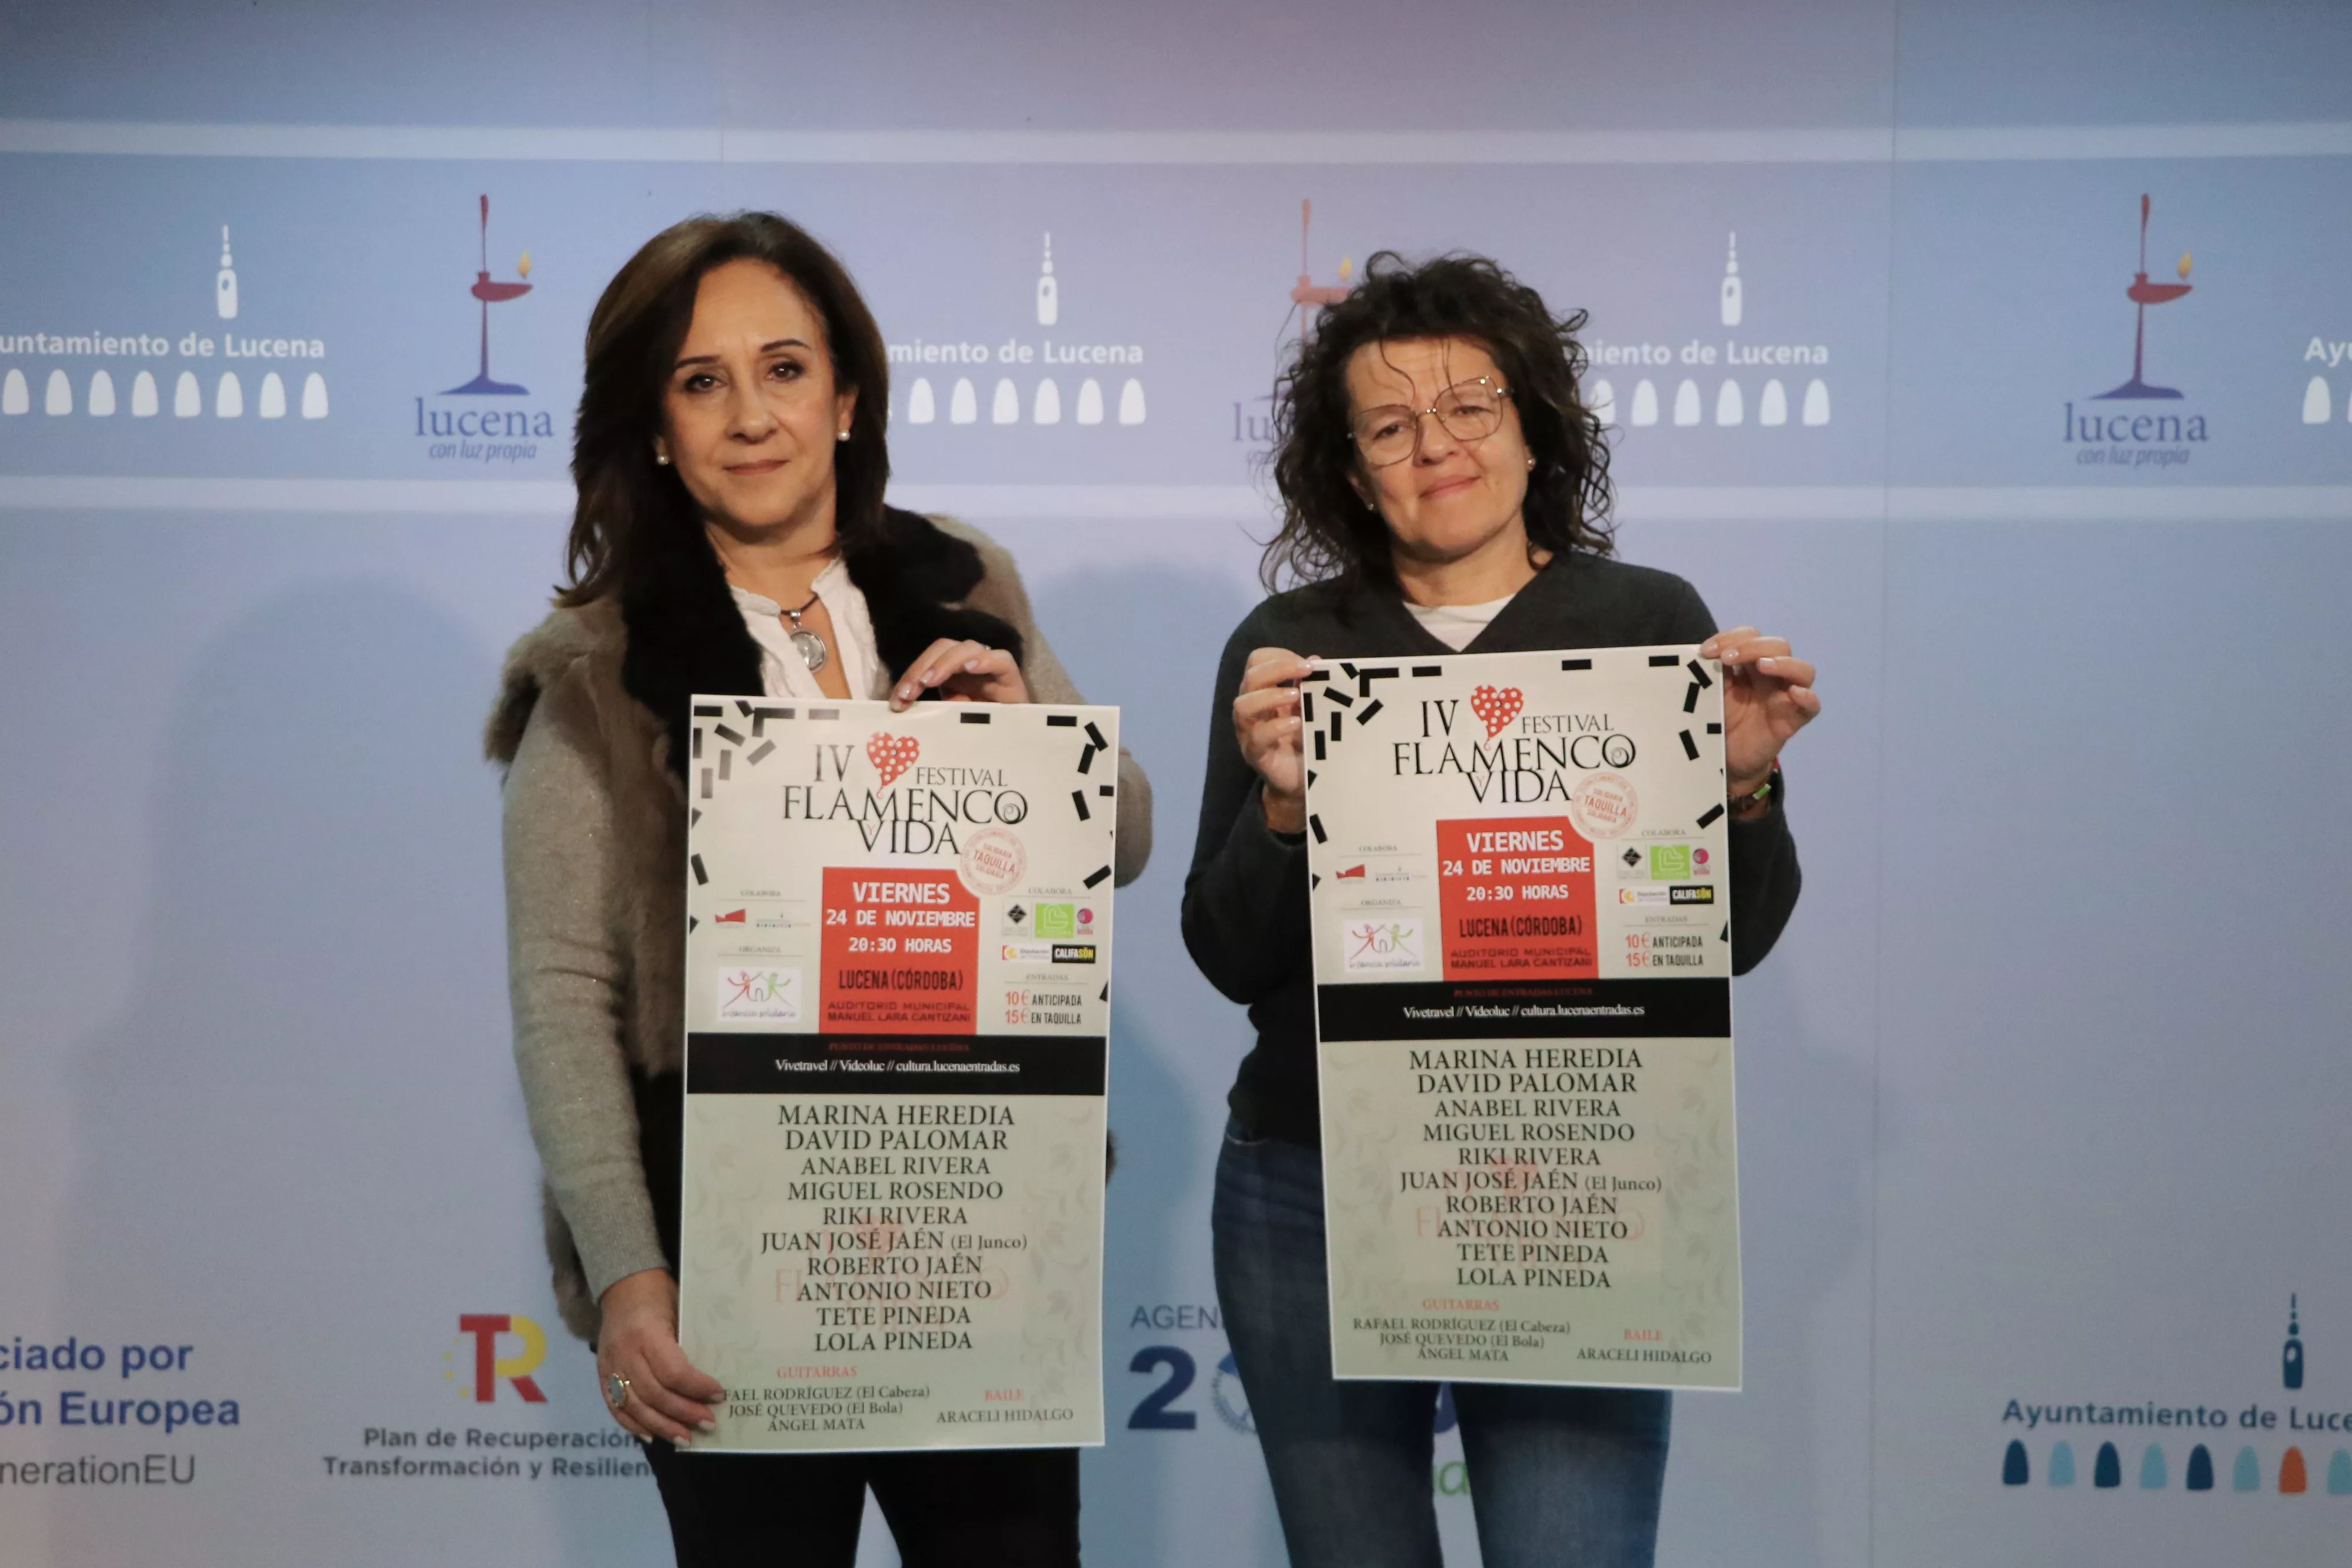 Araceli Rodríguez y Araceli Delgado presentan la cuarta edición del festival 'Flamenco y Vida'